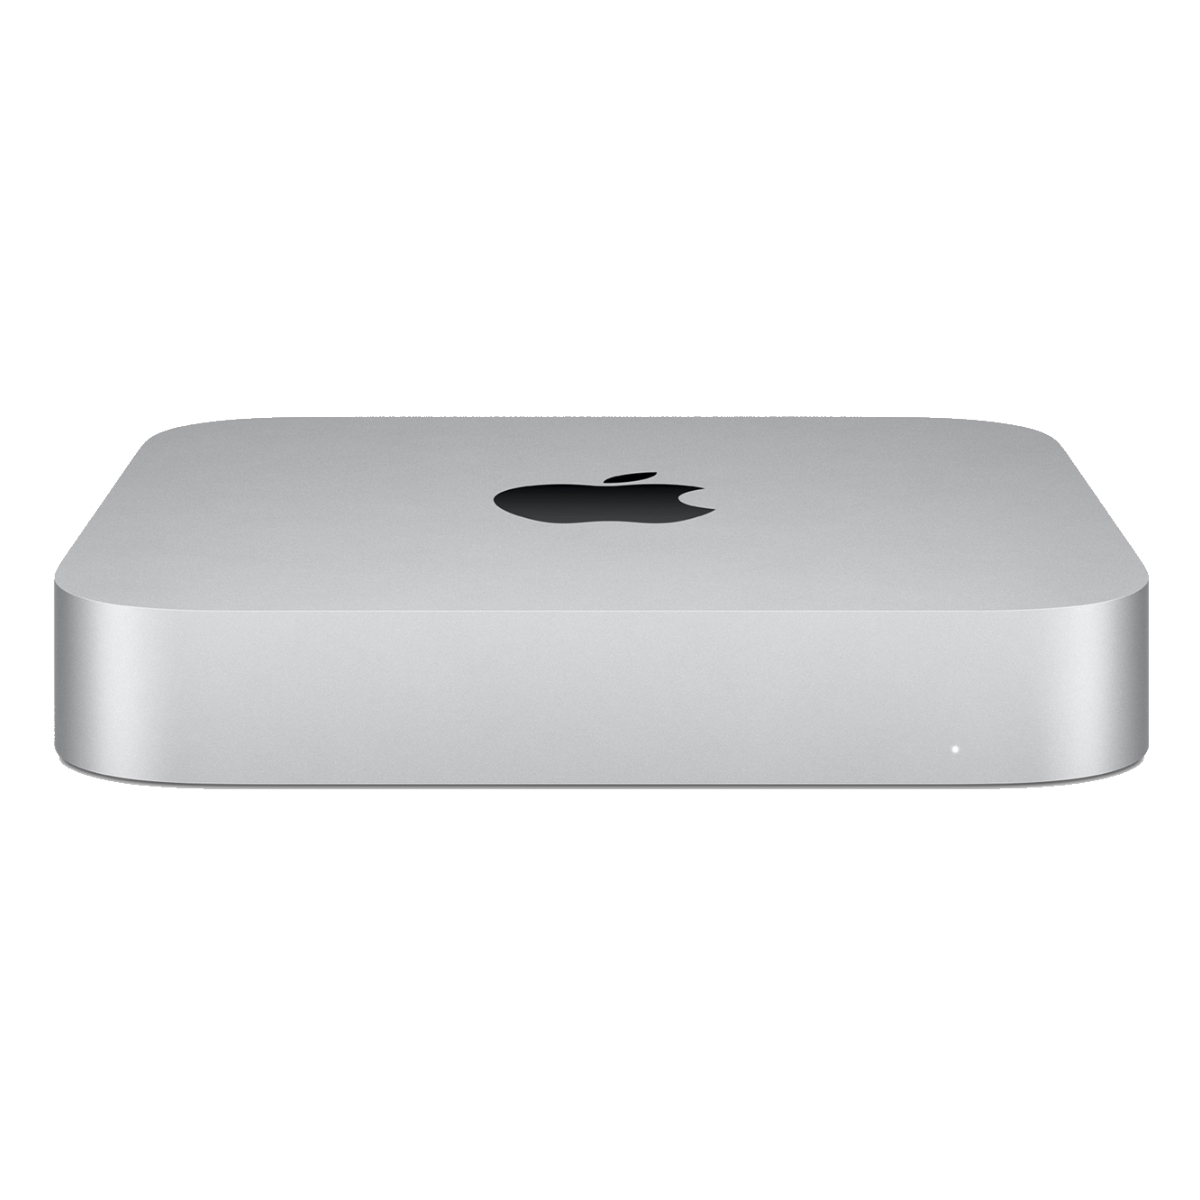 春夏新色 楽天市場 Apple Mac Mini Mgnr3j A シルバー デスクトップパソコン アップル 新品 宅配便送料無料 おしゃれcafe楽天市場店 予約販売品 Allobledi Ifm Tn